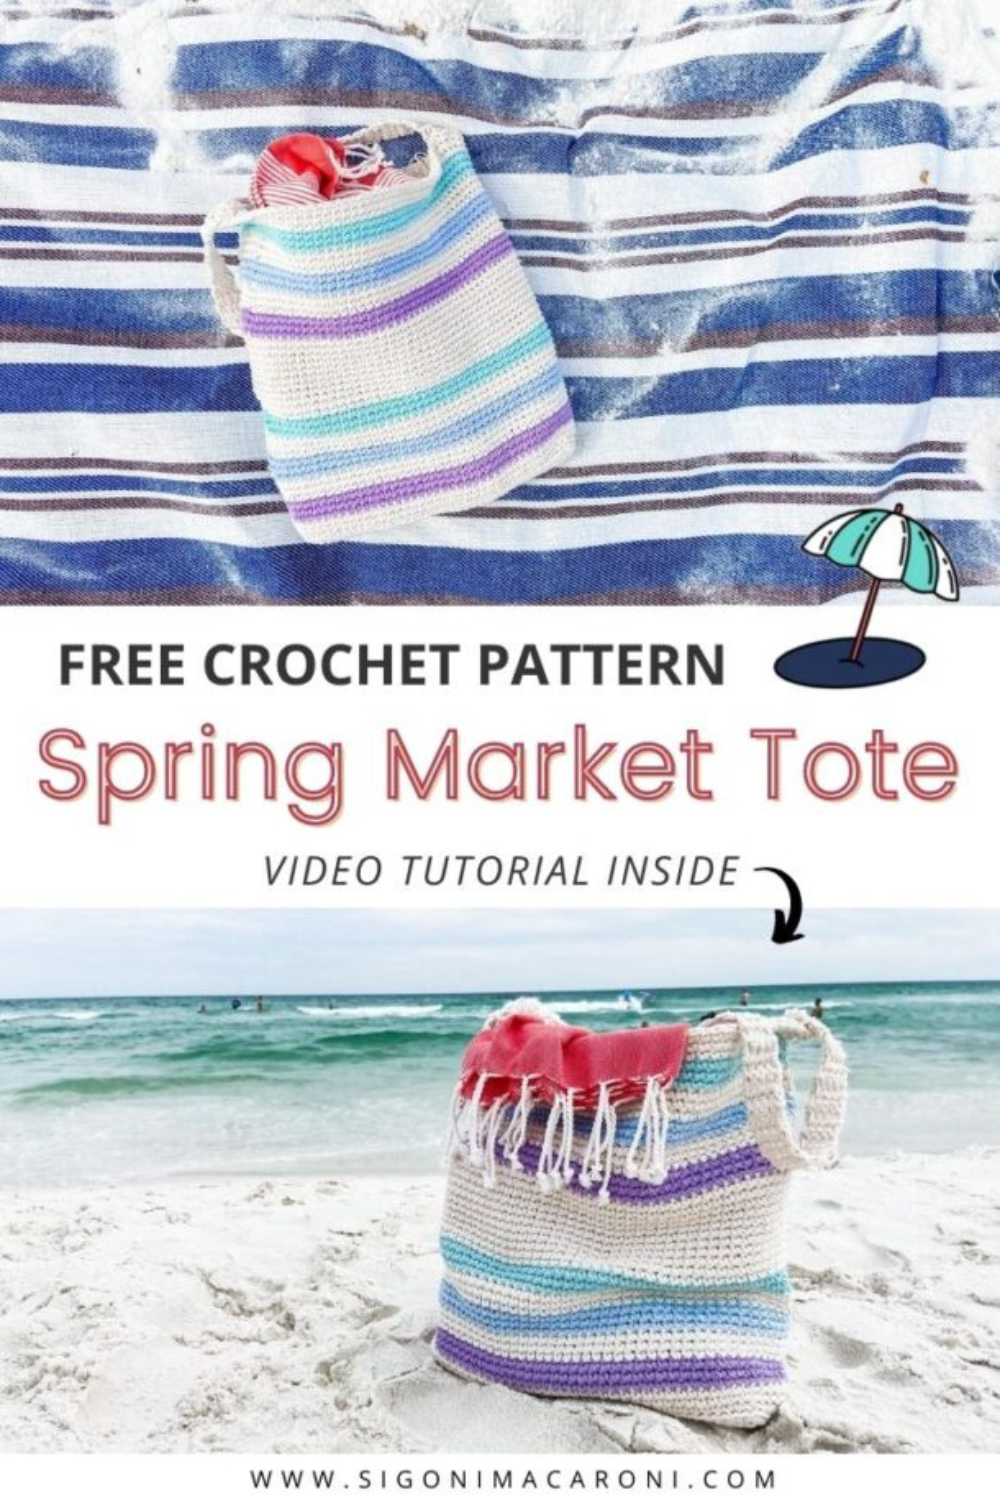 Crochet Summer Beach Bags